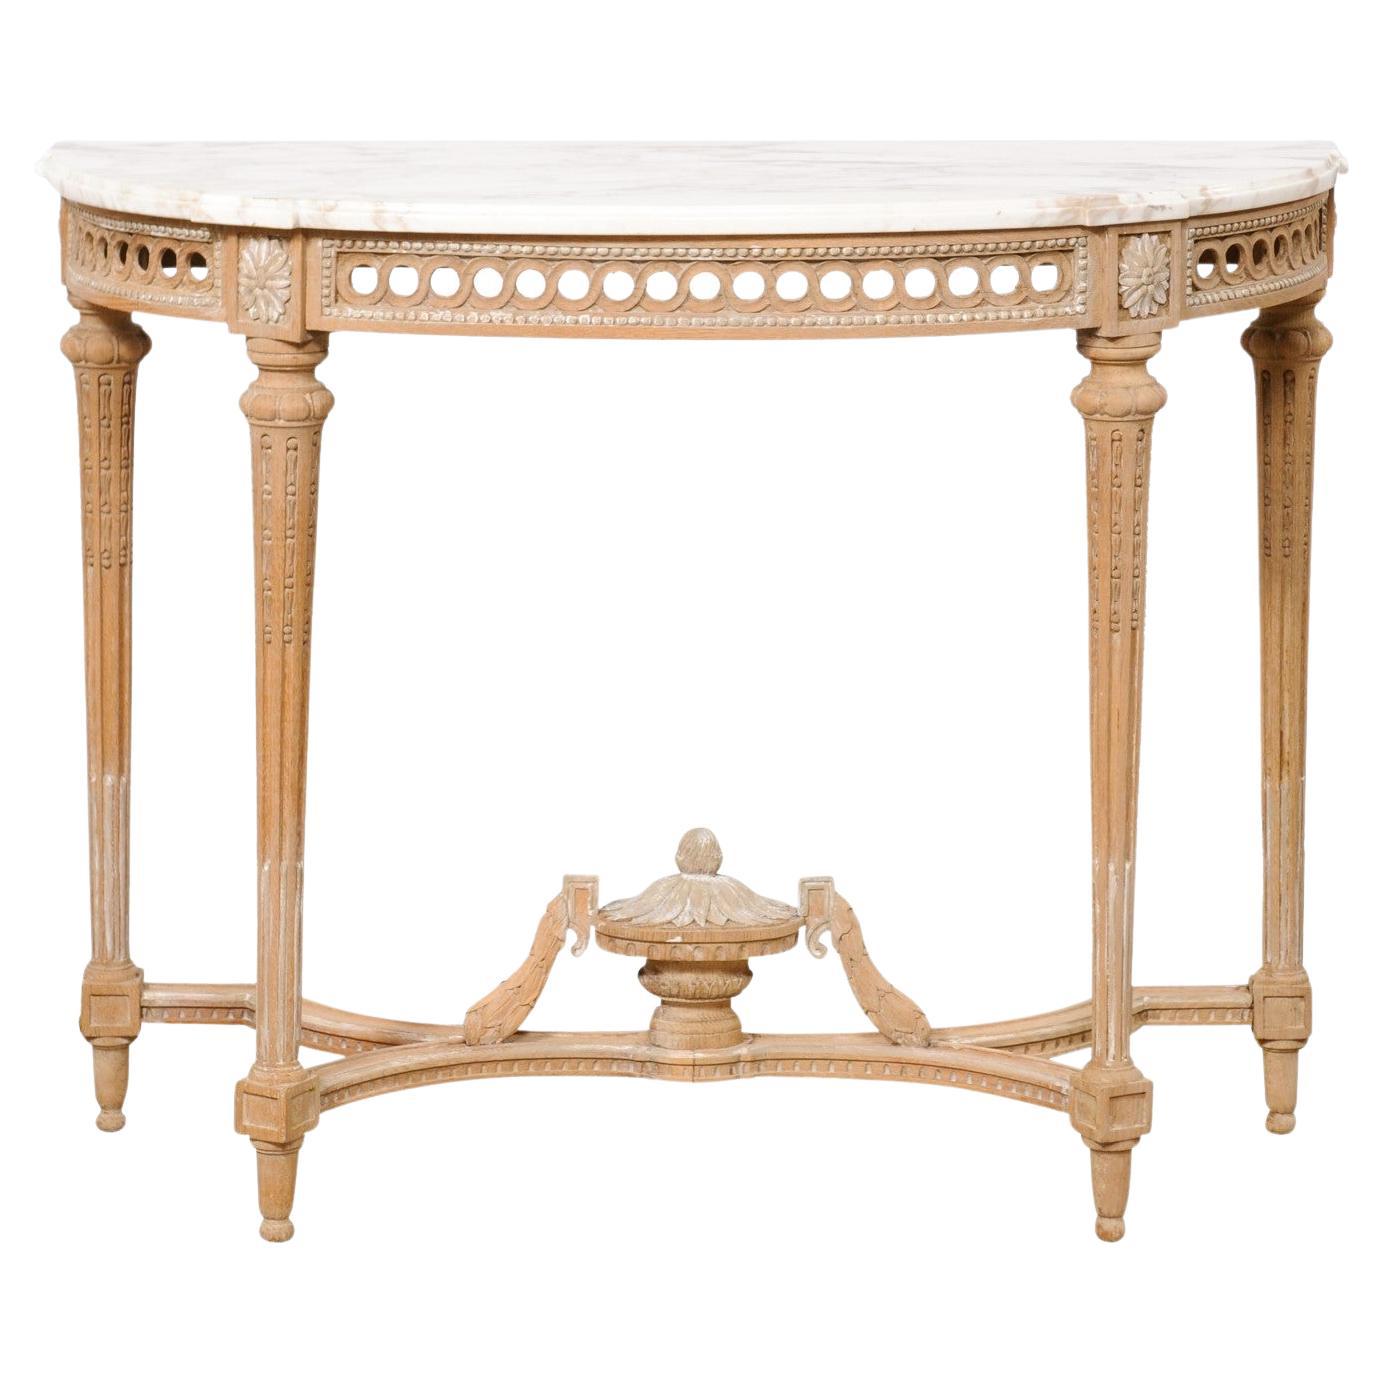 Table console en marbre de style néoclassique français avec joli fleuron en forme d'urne sur la face inférieure